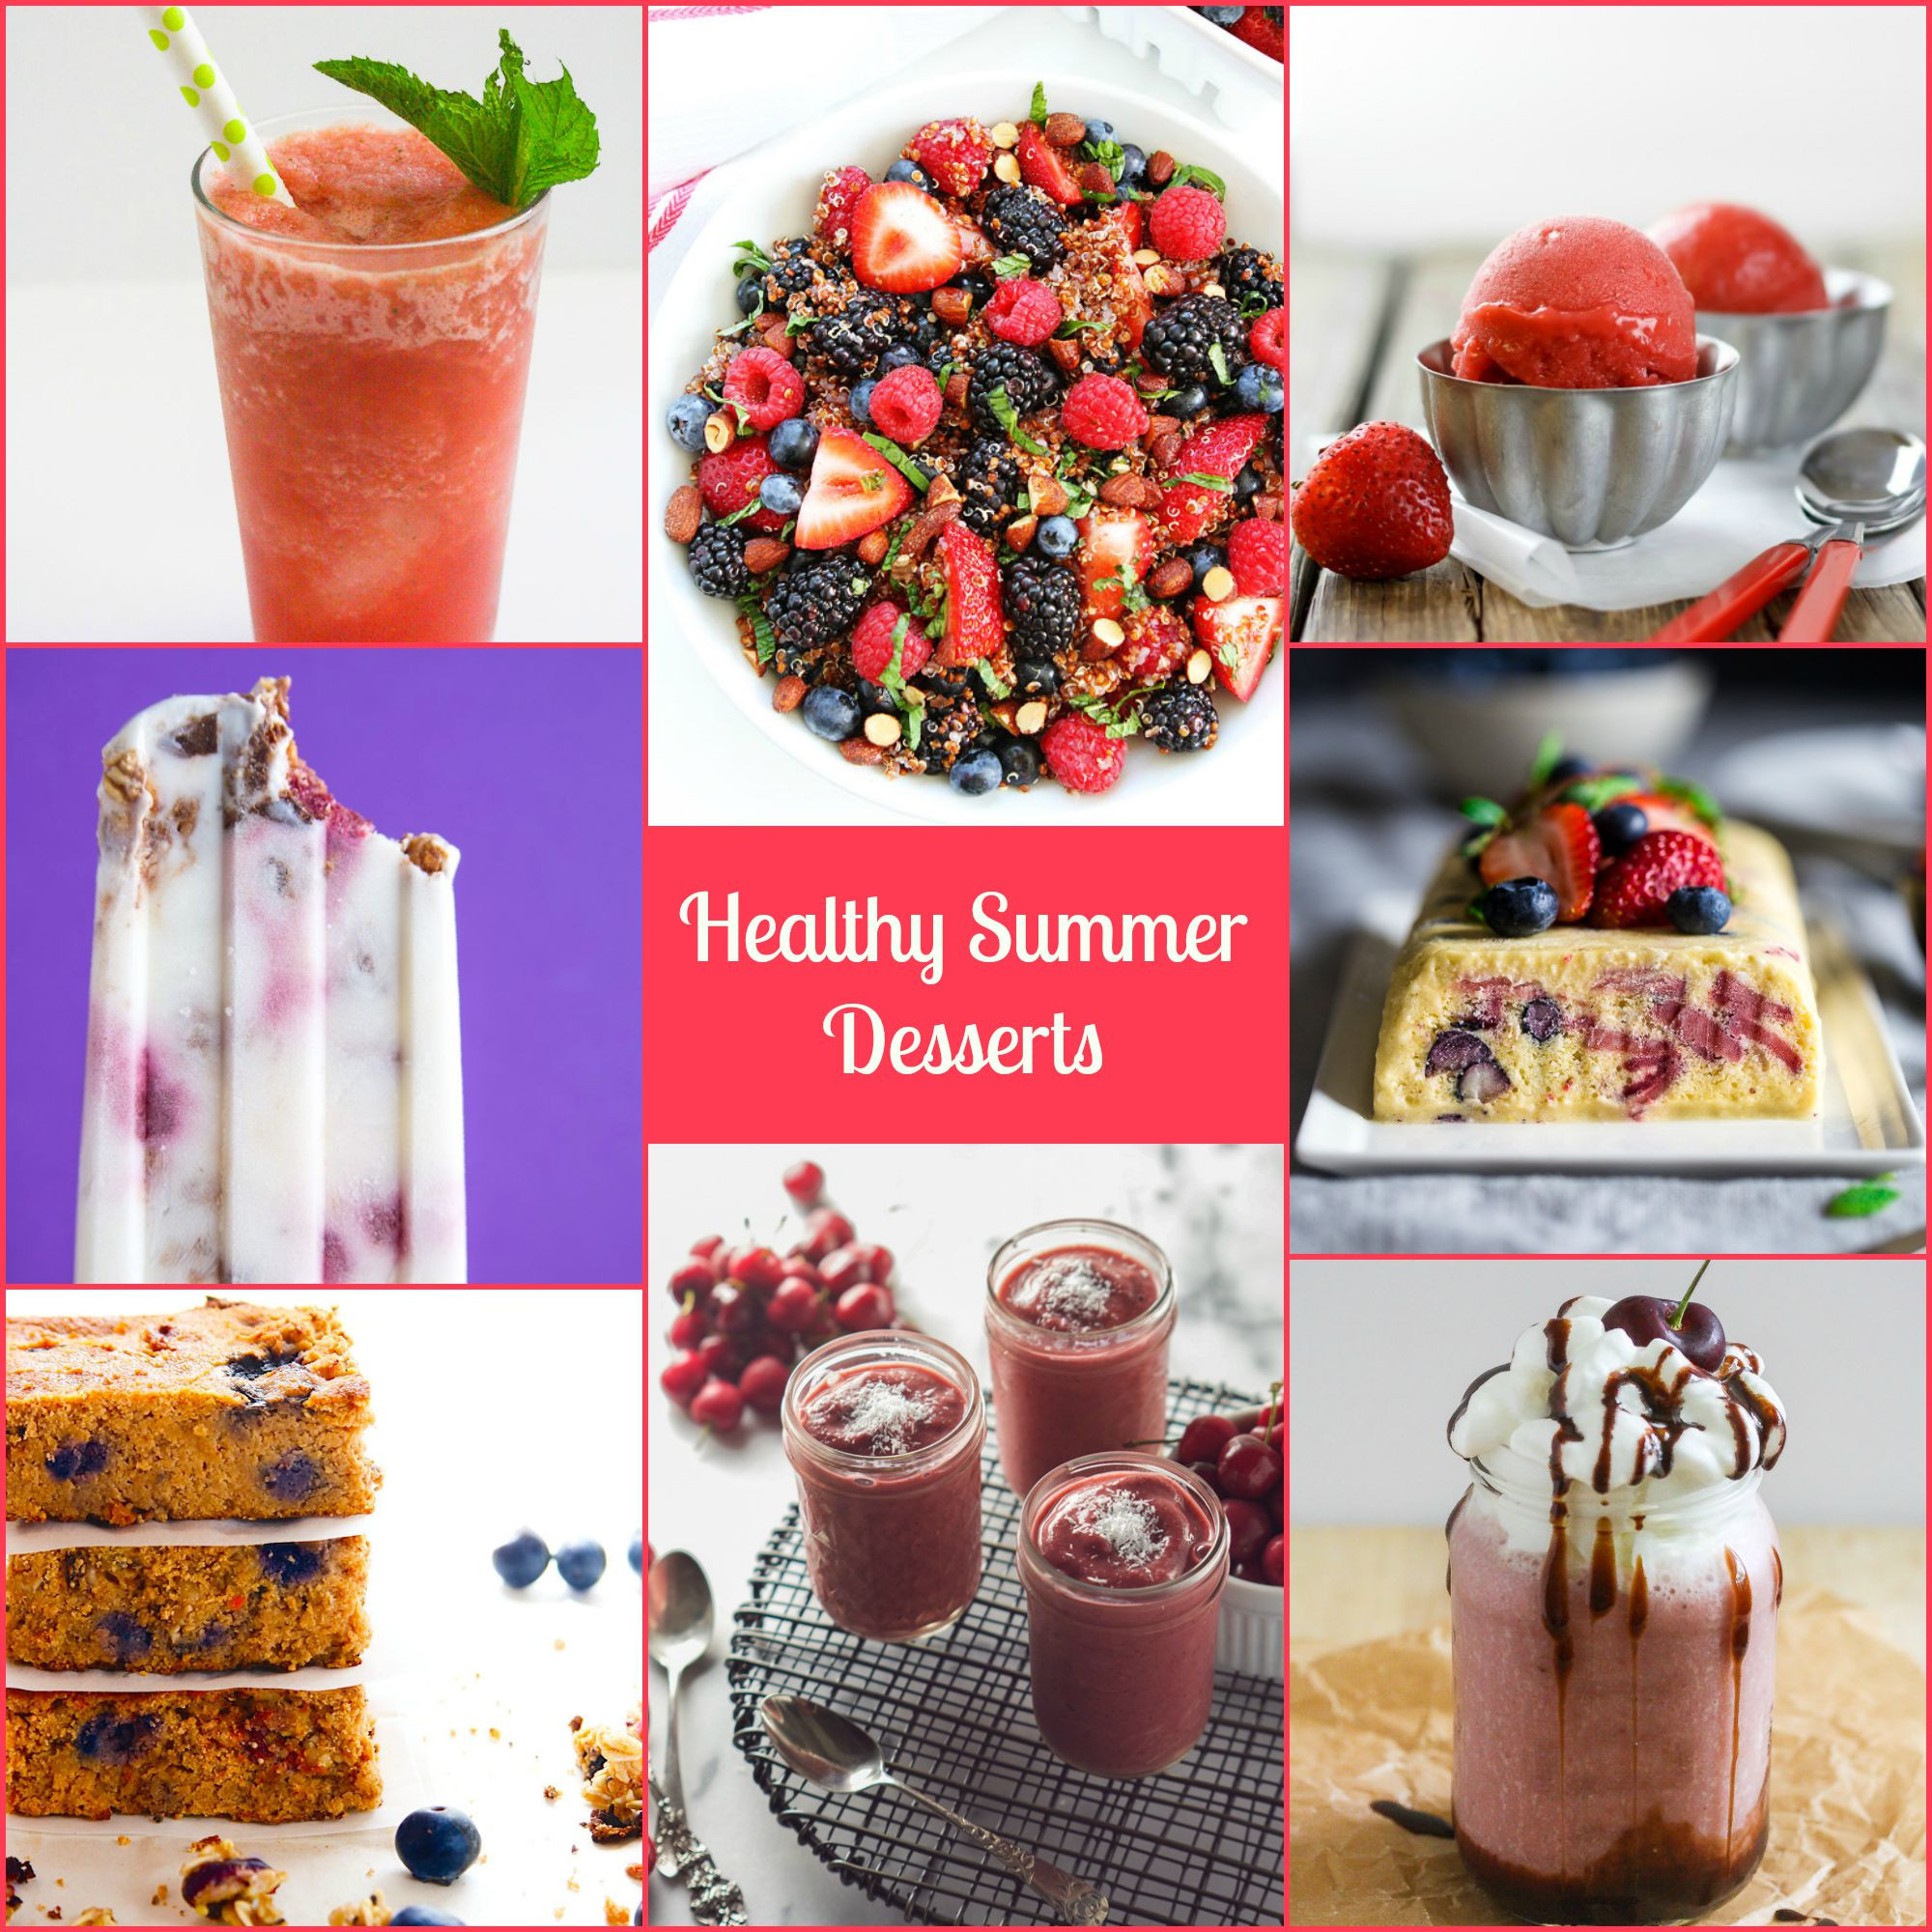 Healthy Summer Desserts
 Healthy Summer Desserts